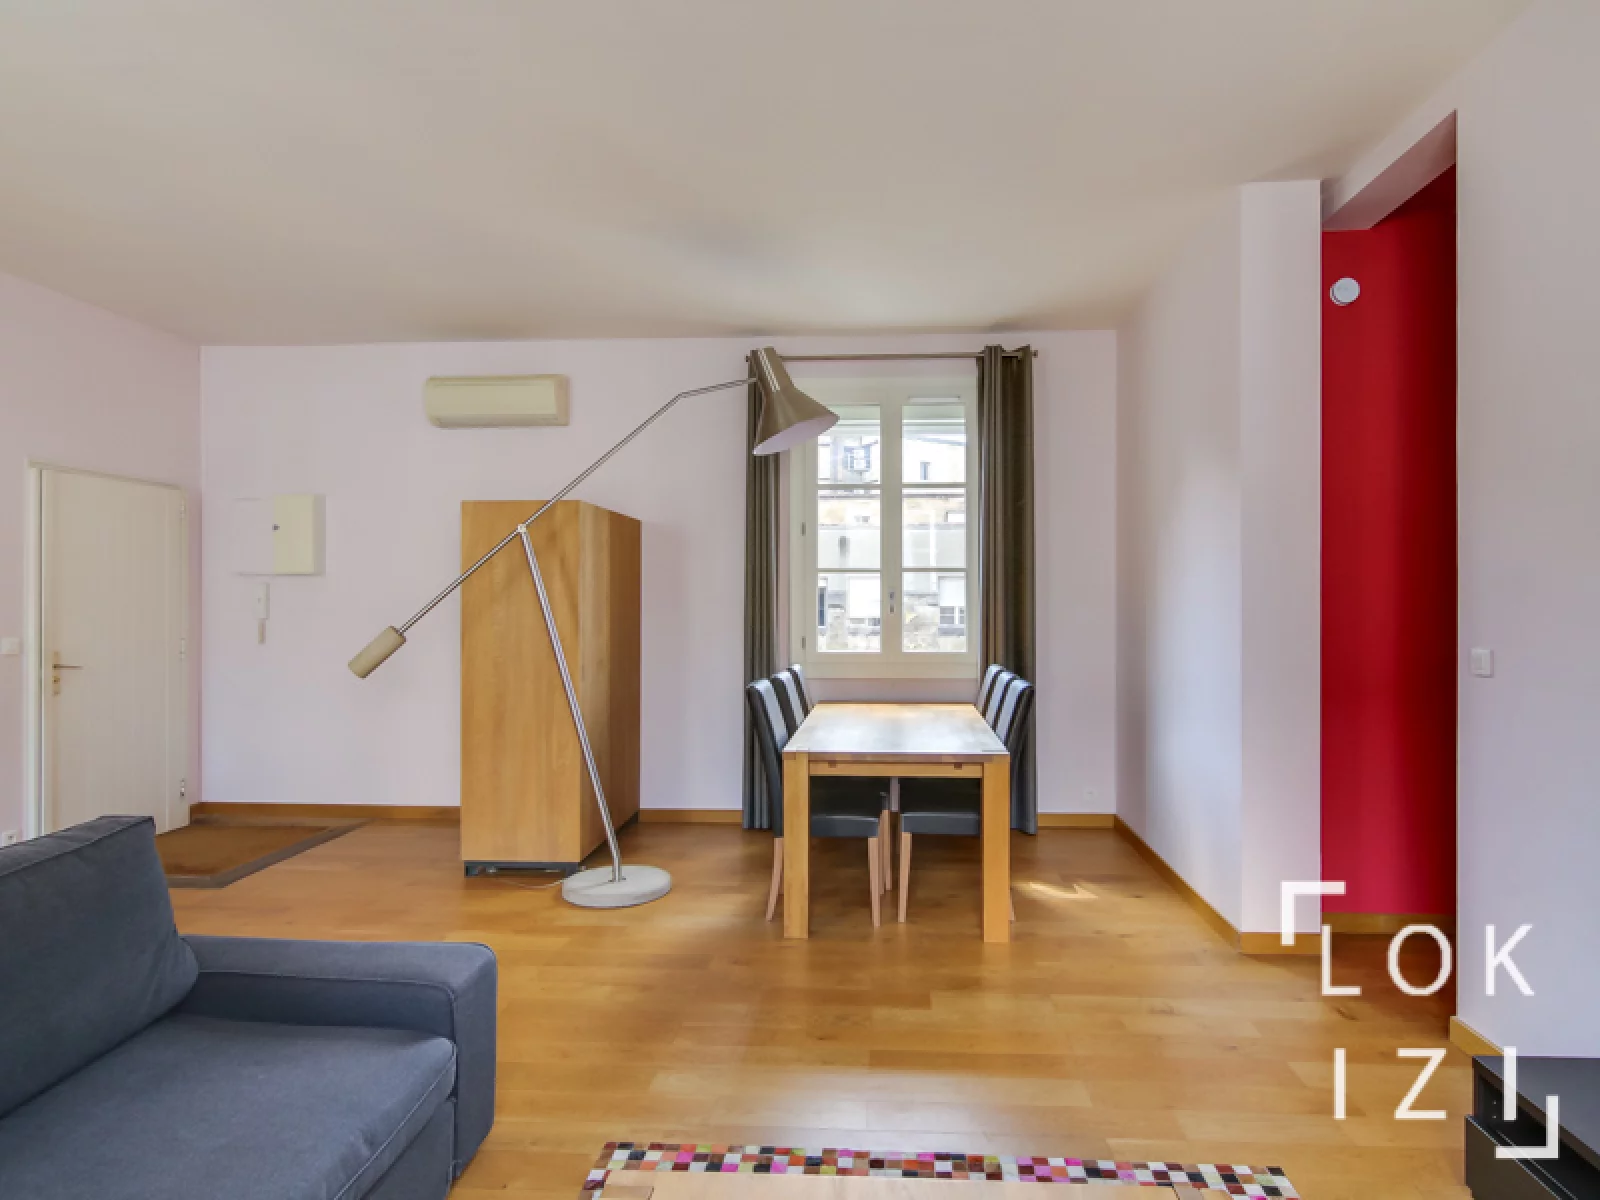 Location appartement meublé 70m² (Bordeaux centre - Triangle d'or)